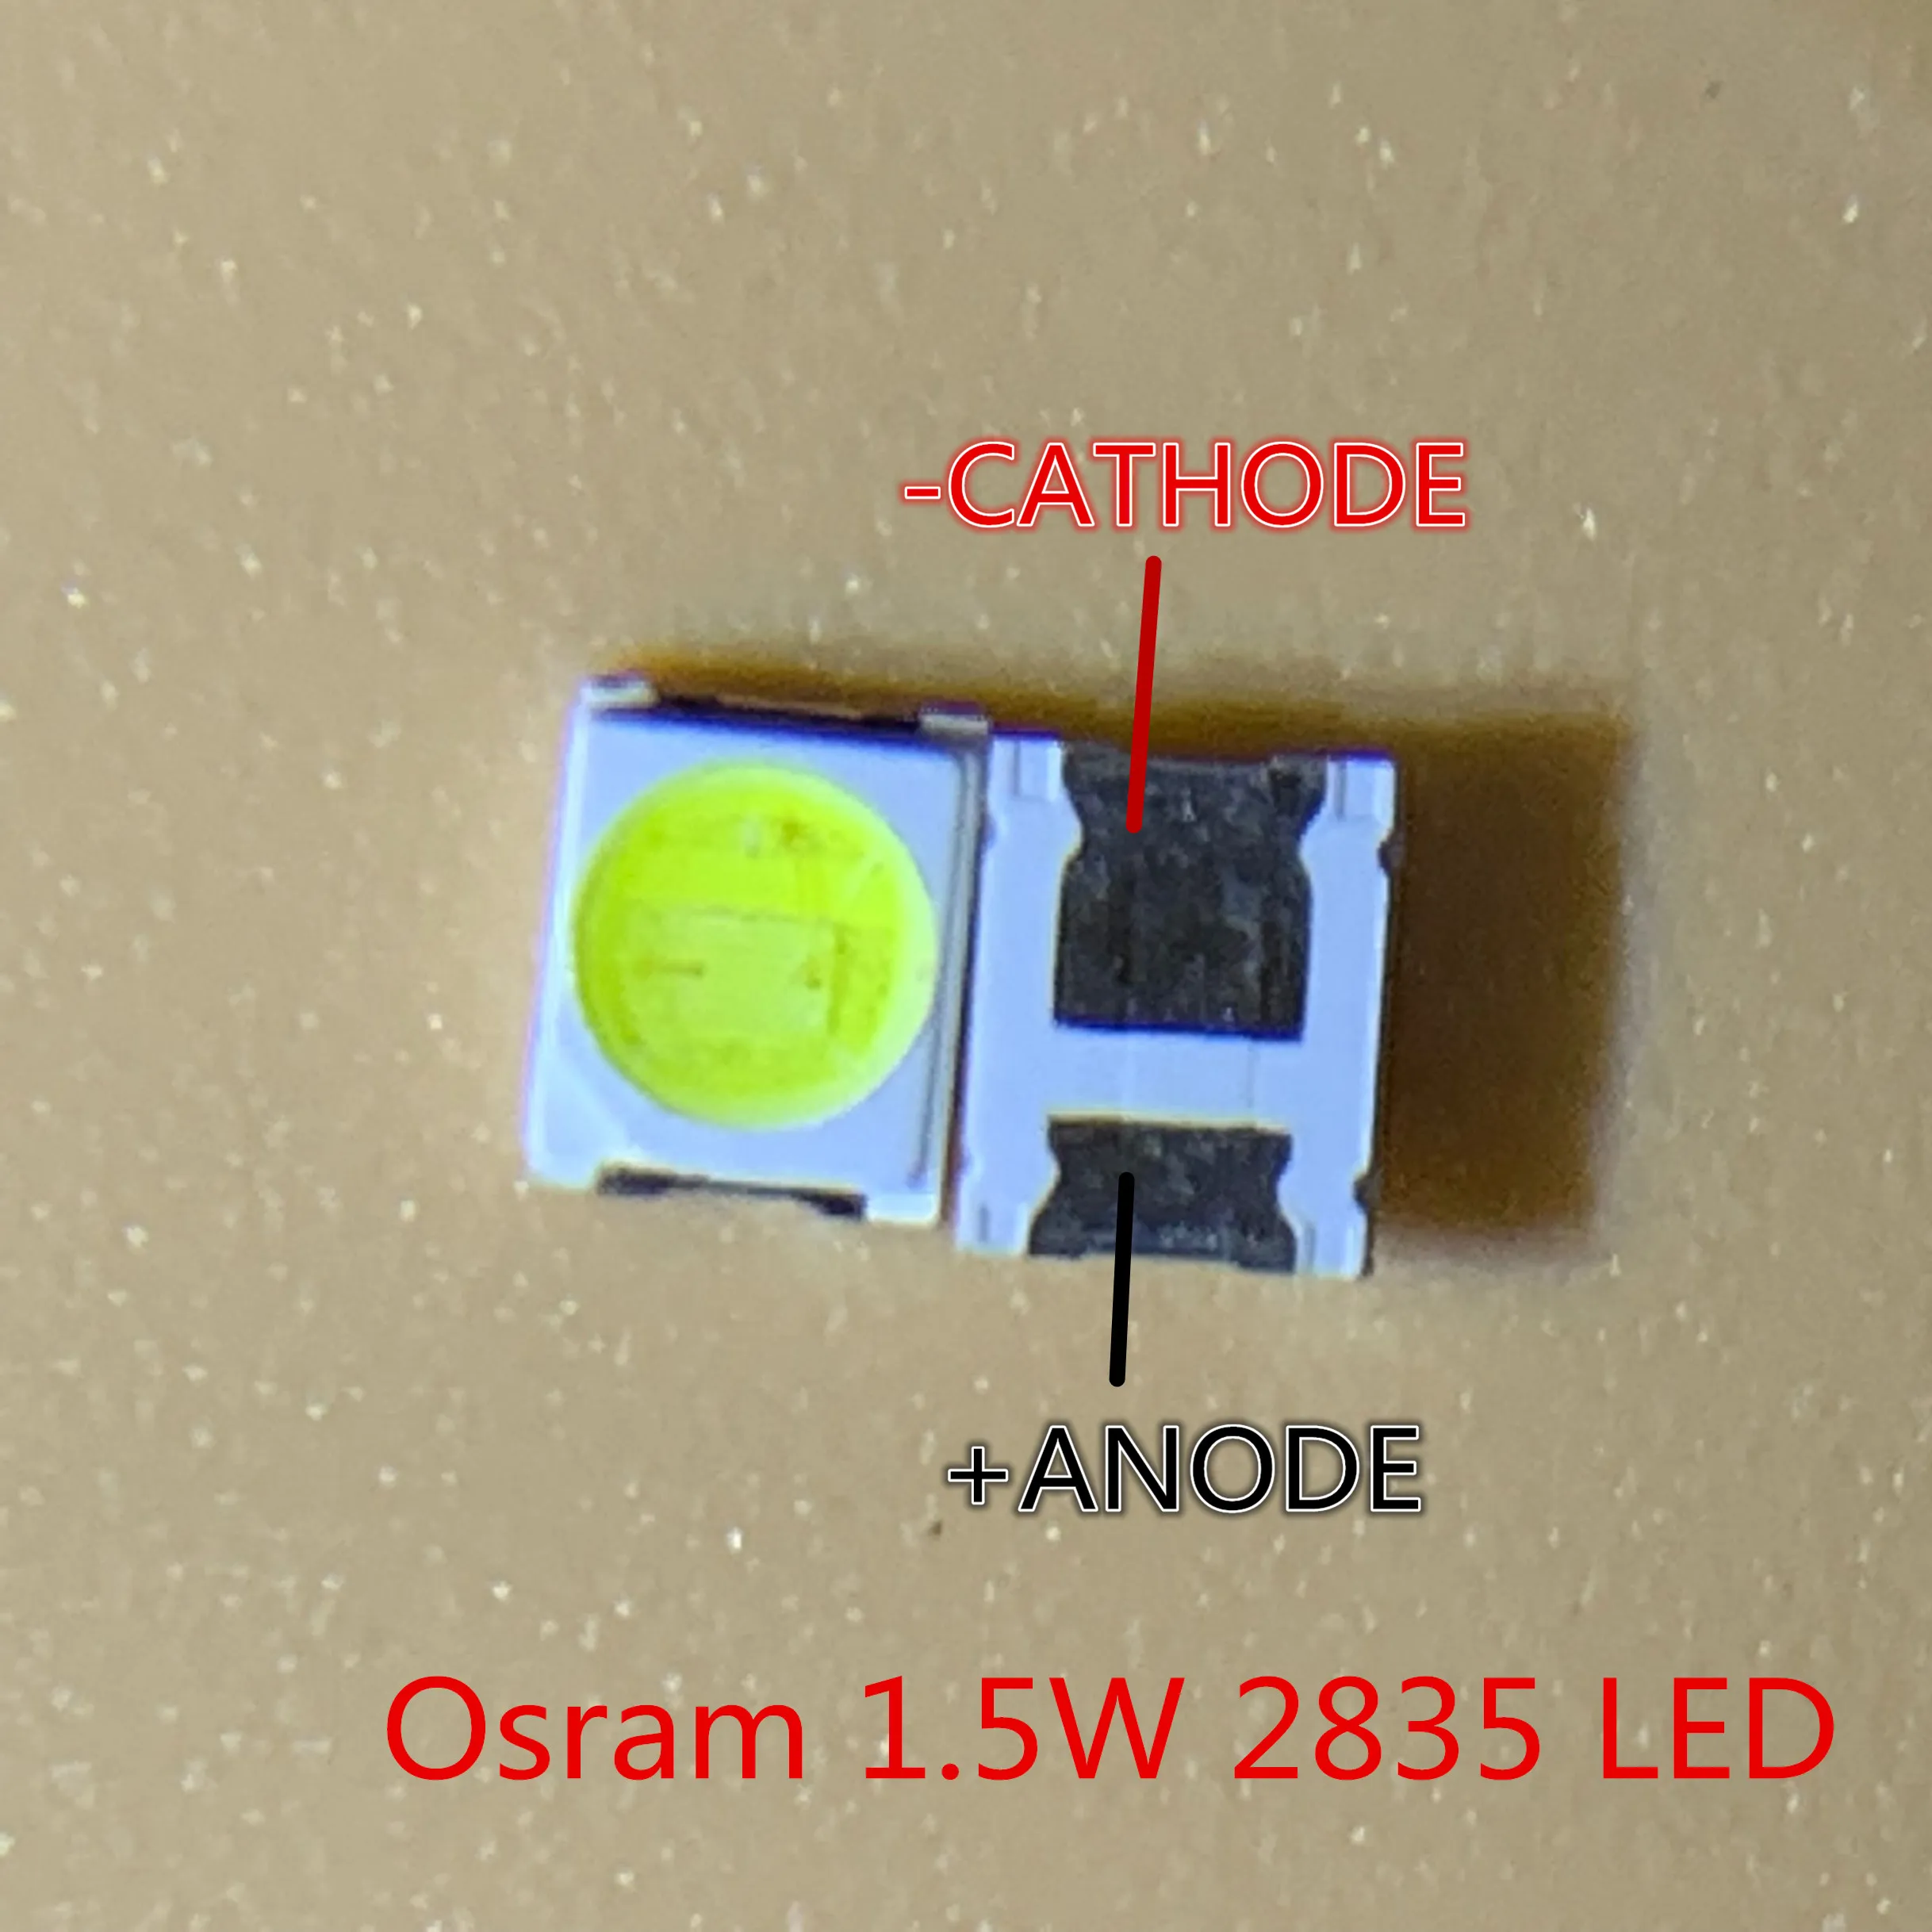 200 шт. для OSRAM СВЕТОДИОДНЫЙ подсветка 1,5 Вт 3 в 1210 3528 2835 131LM холодный белый ЖК-подсветка для ТВ приложения CUW JHSP - Цвет: 2835 Universal OSRAM